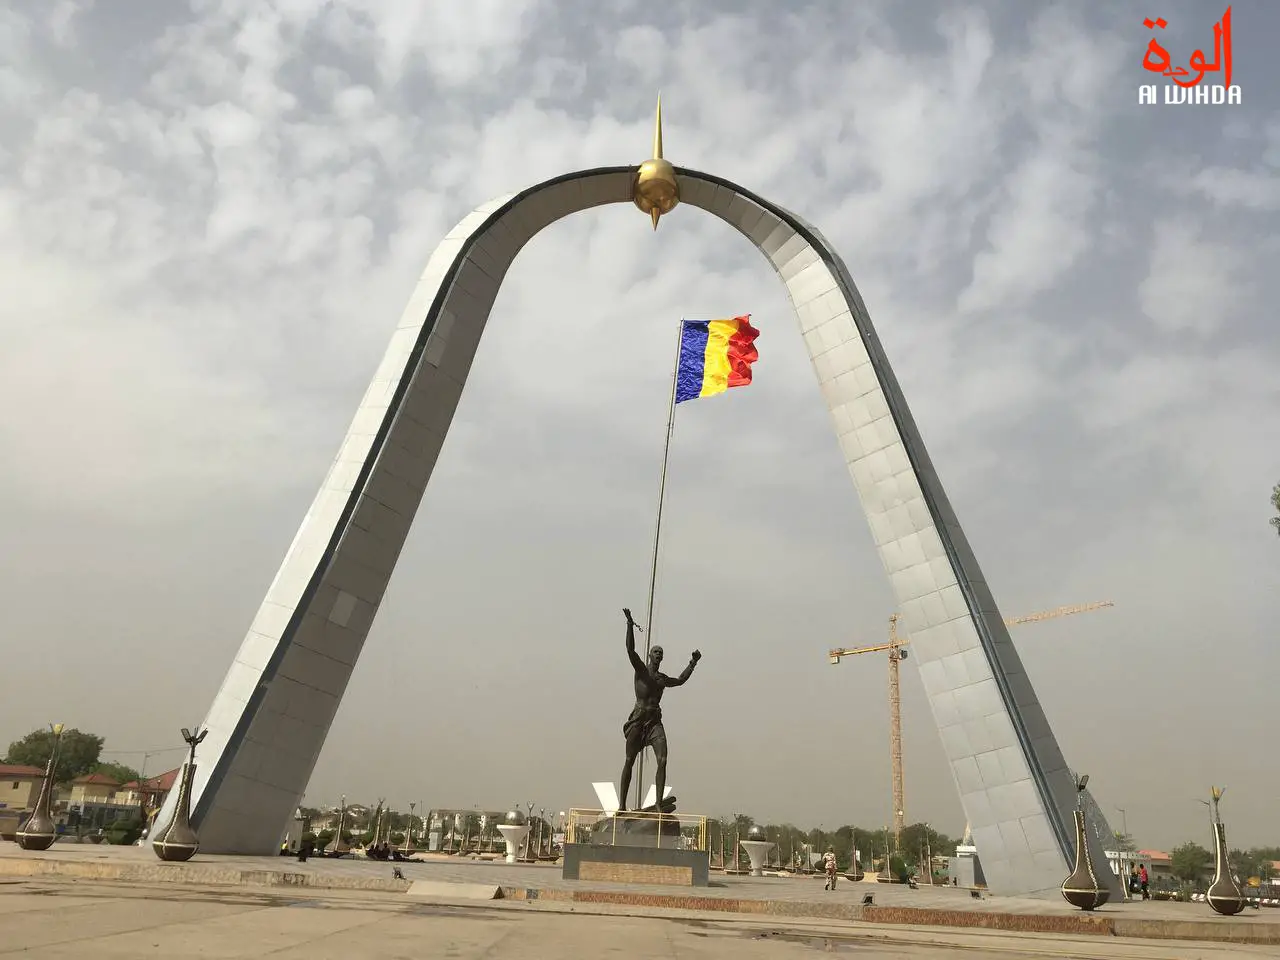 Discours incitant à la haine au Tchad : comment en sommes-nous arrivés là ?